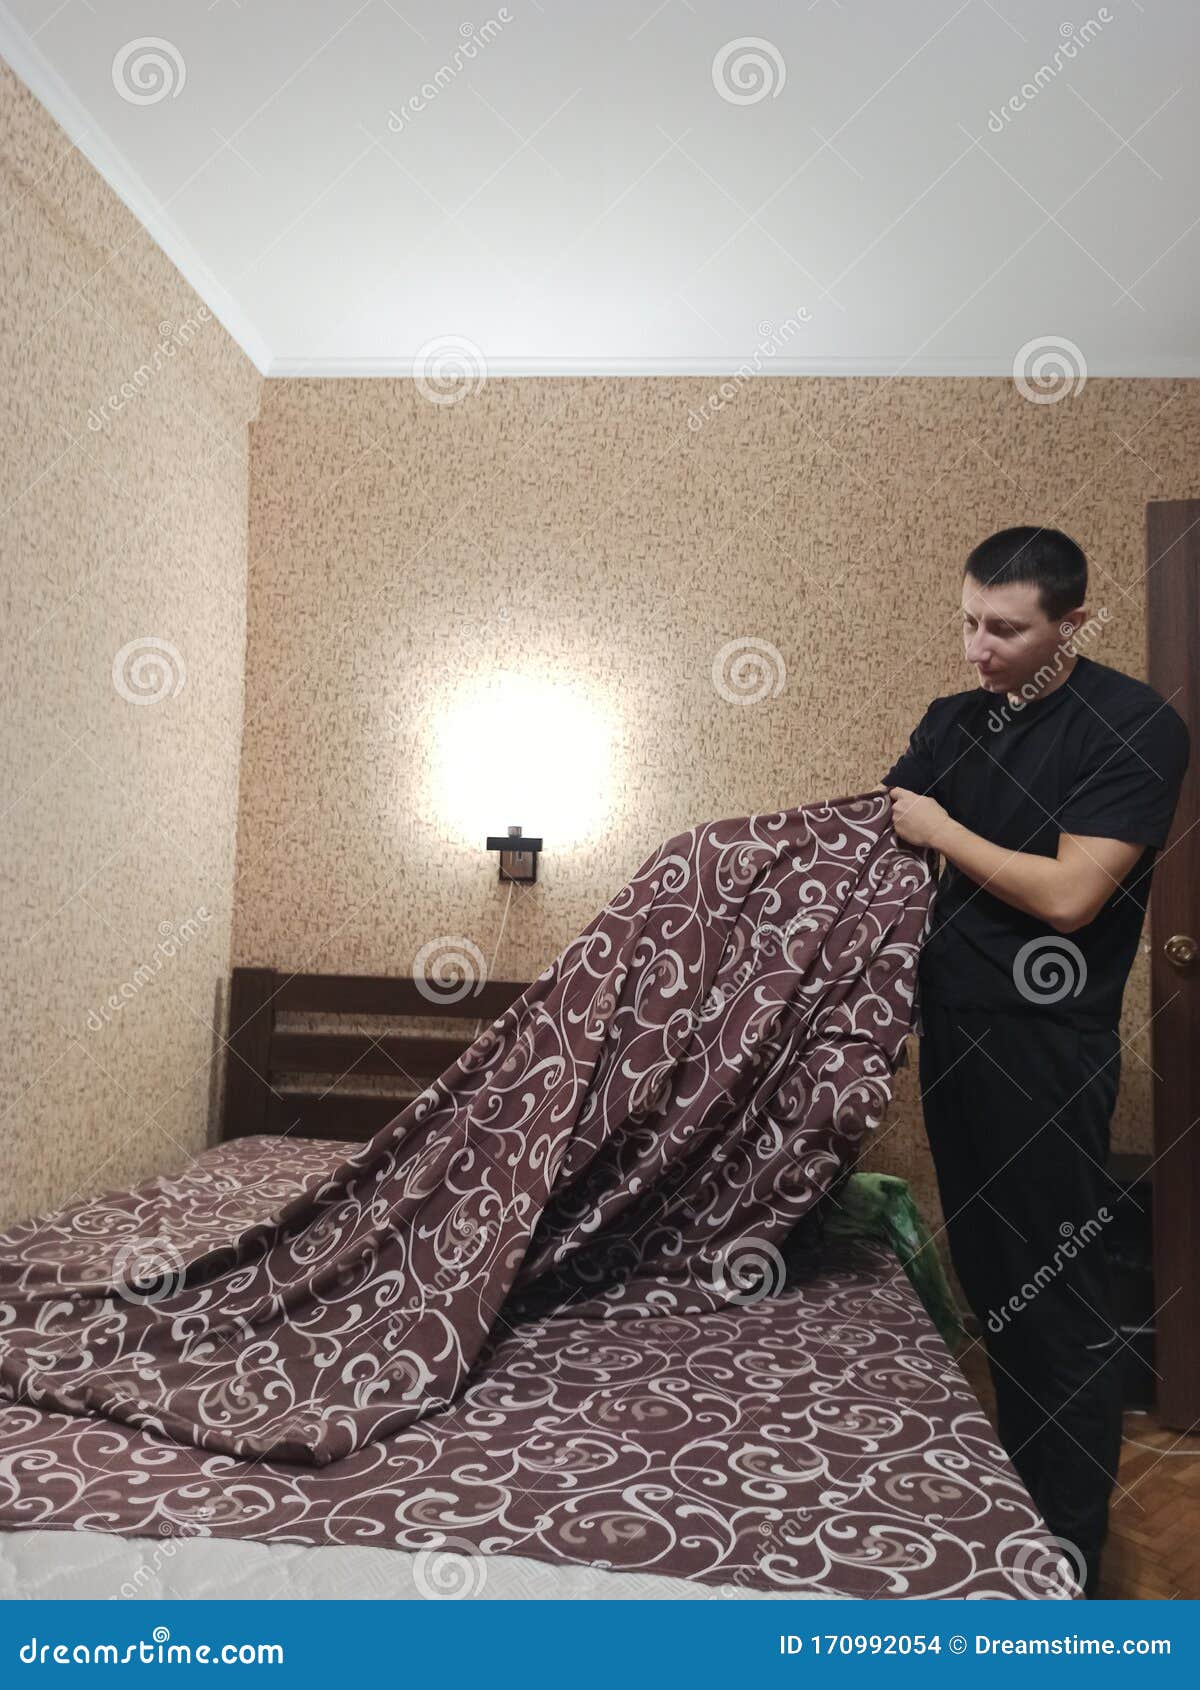 European Man Put Duvet Cover On Blanket In Bedroom Stock Photo